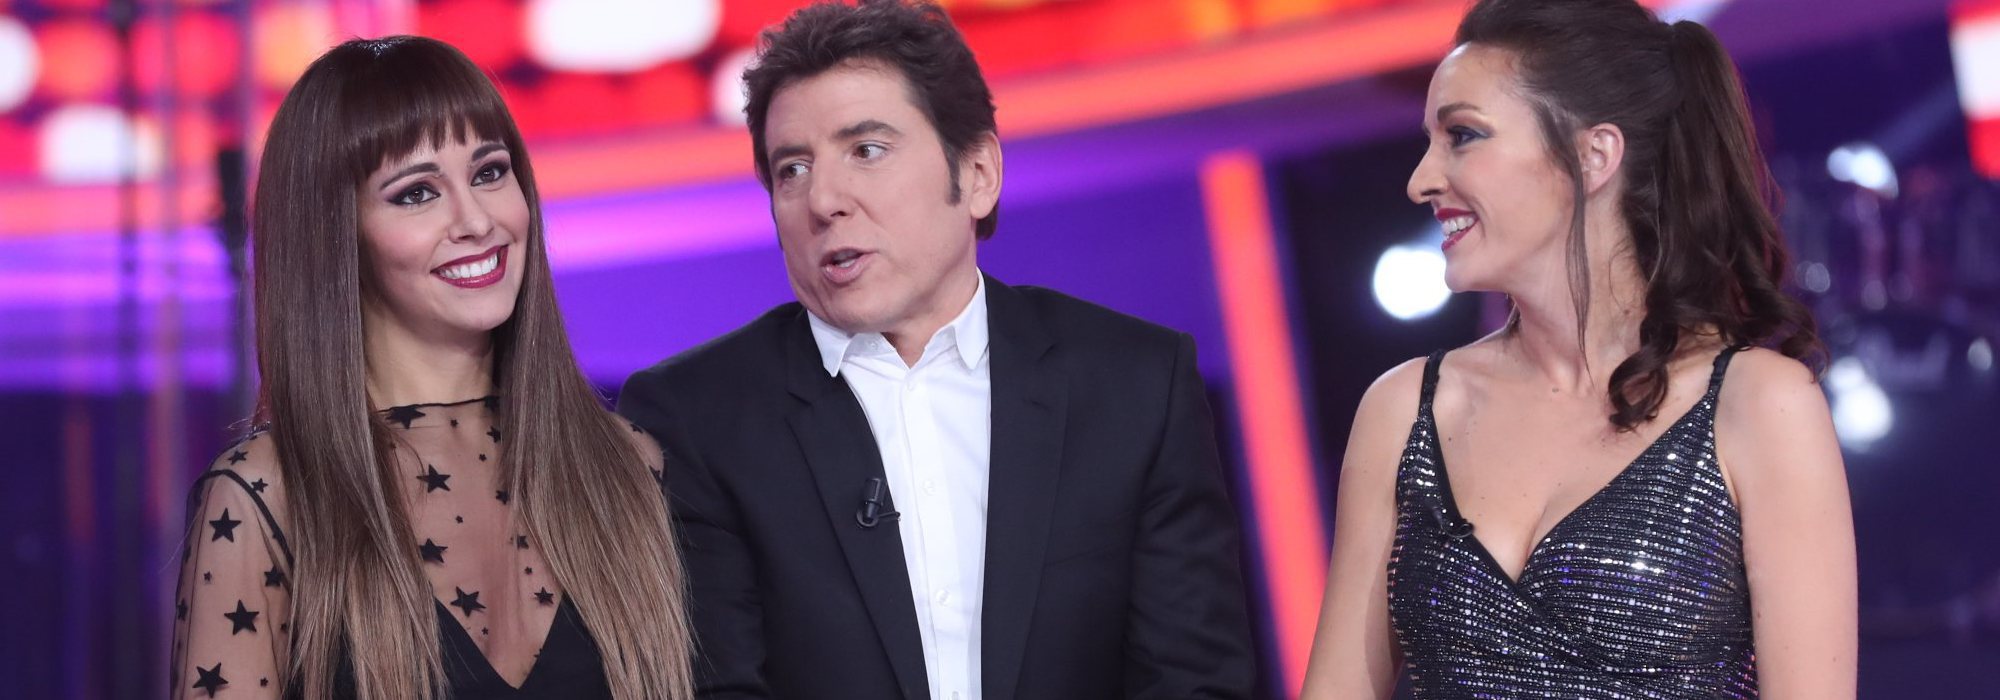 11 rostros televisivos que podrían presentar 'La Voz' de Antena 3